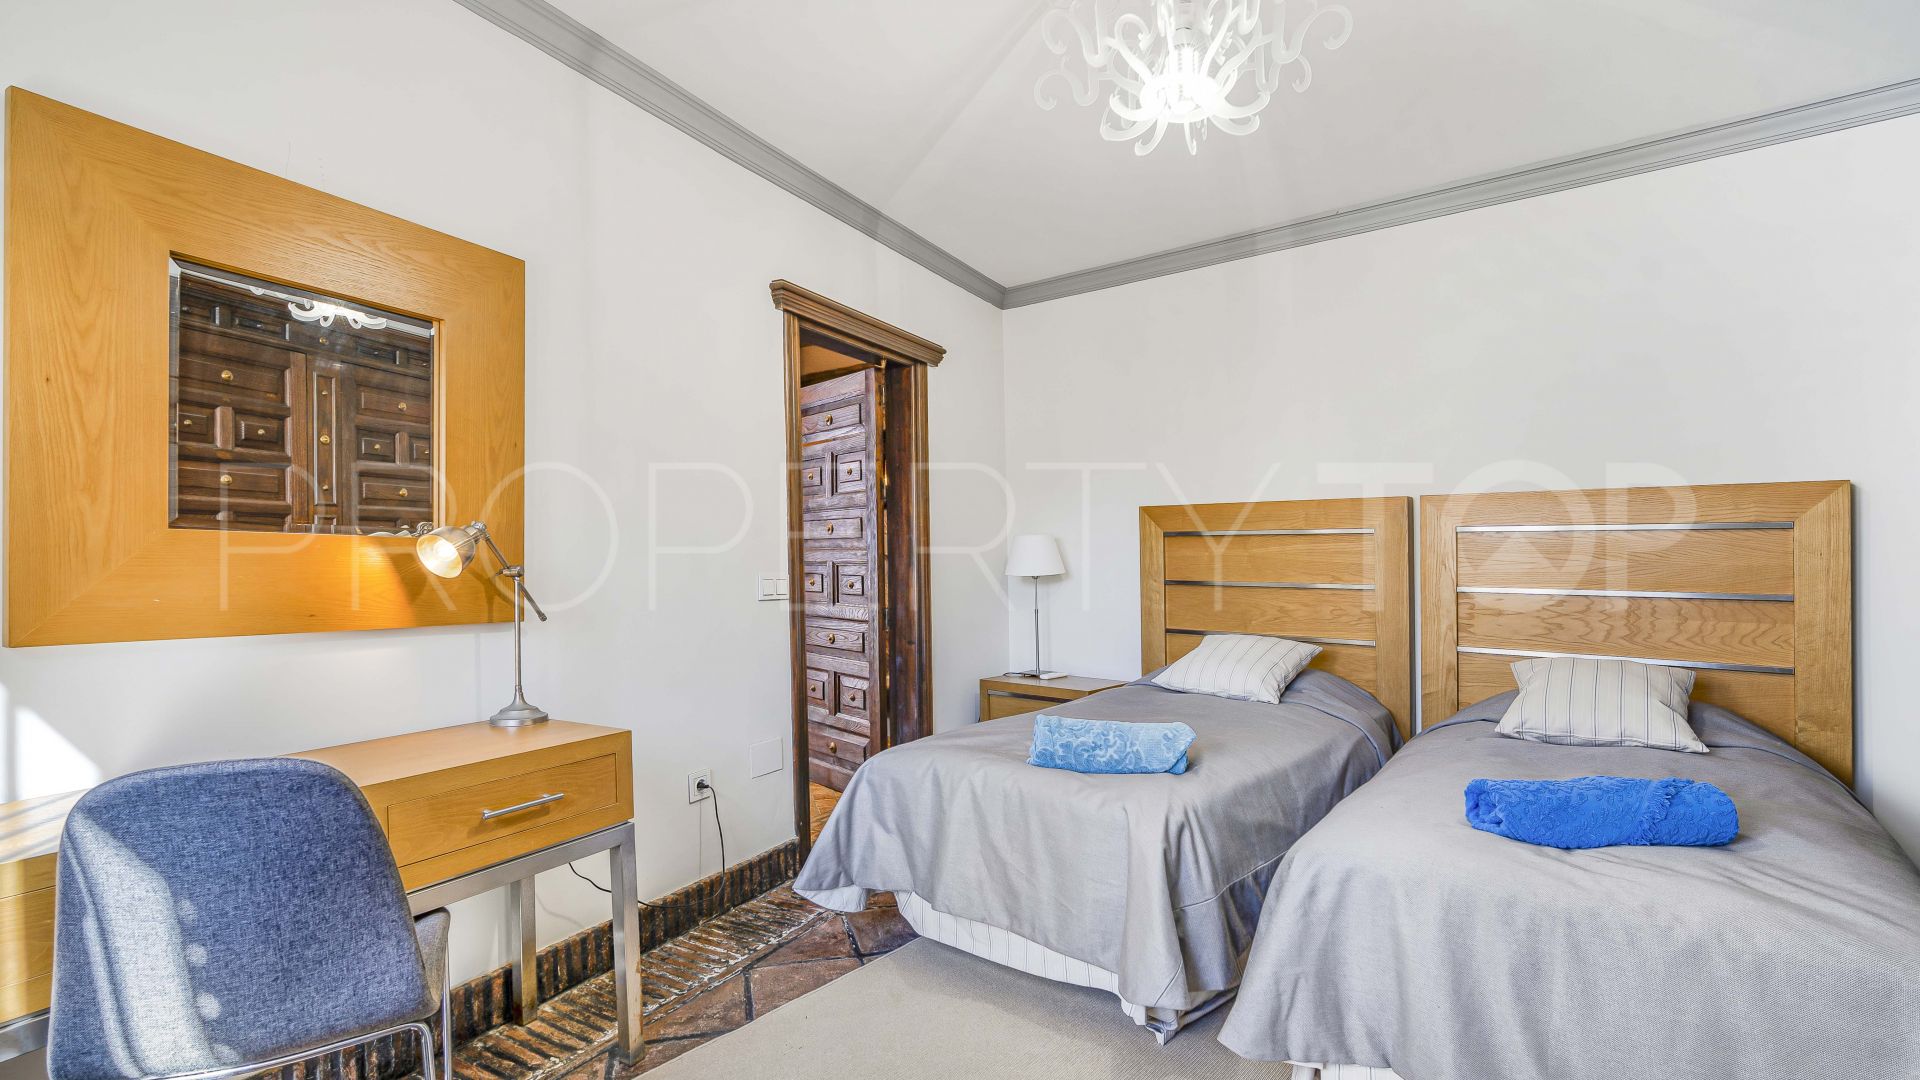 Costabella, villa con 4 dormitorios a la venta